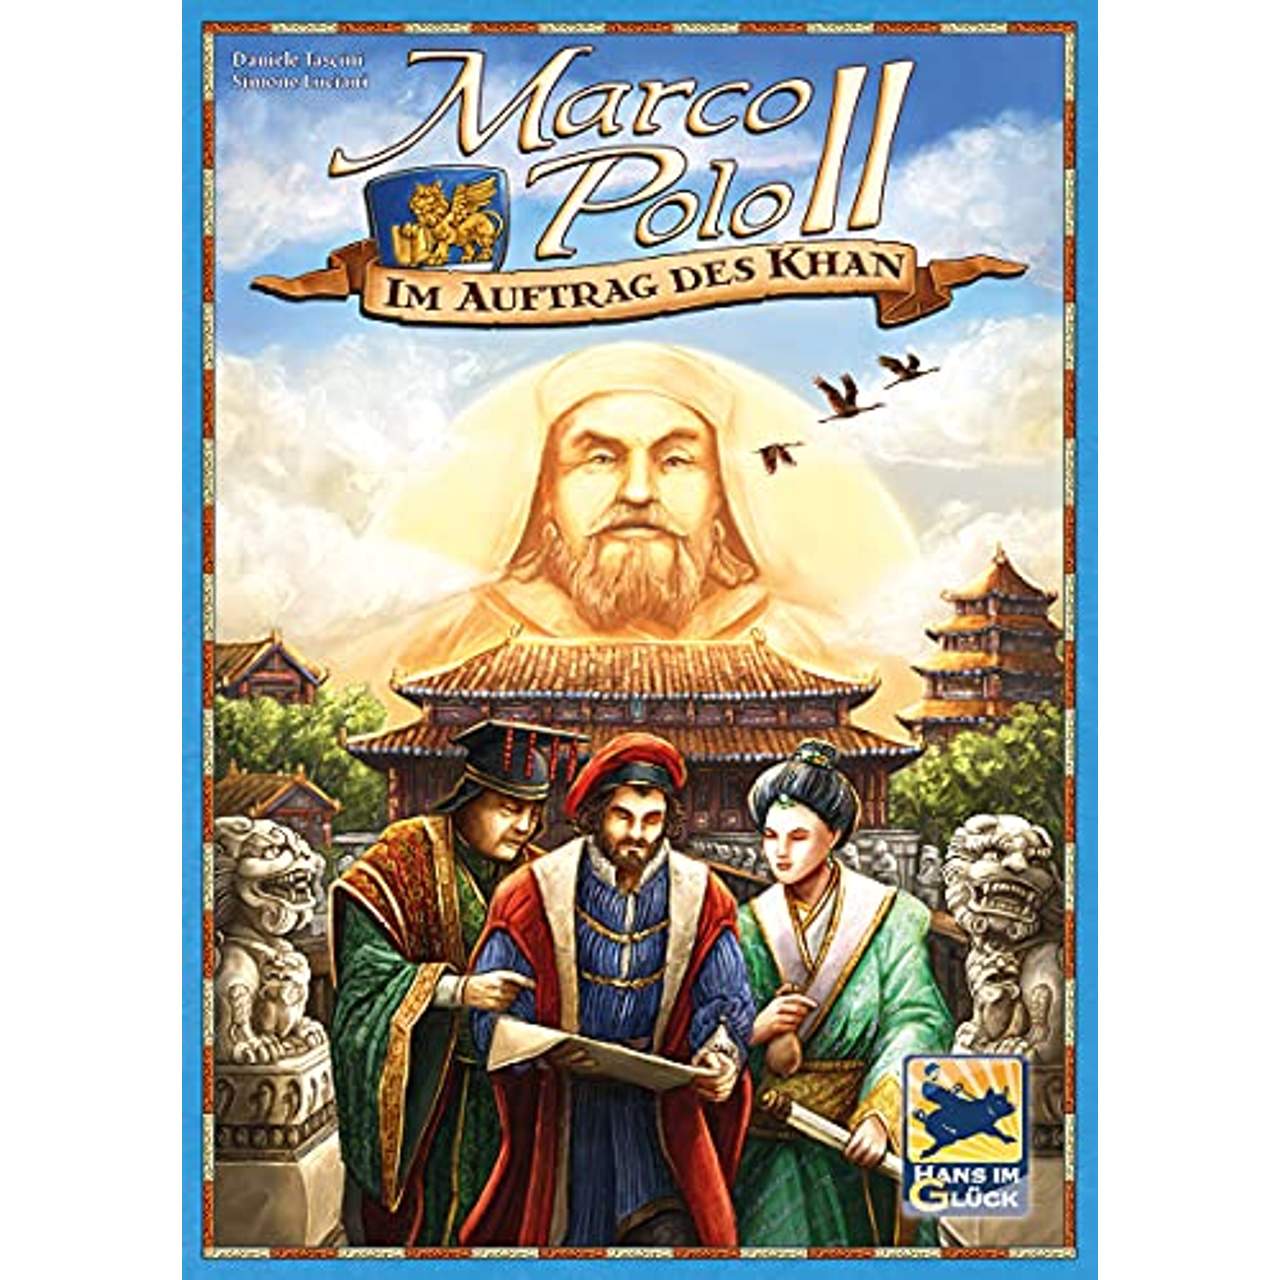 Marco Polo II: Im Auftrag des Khan